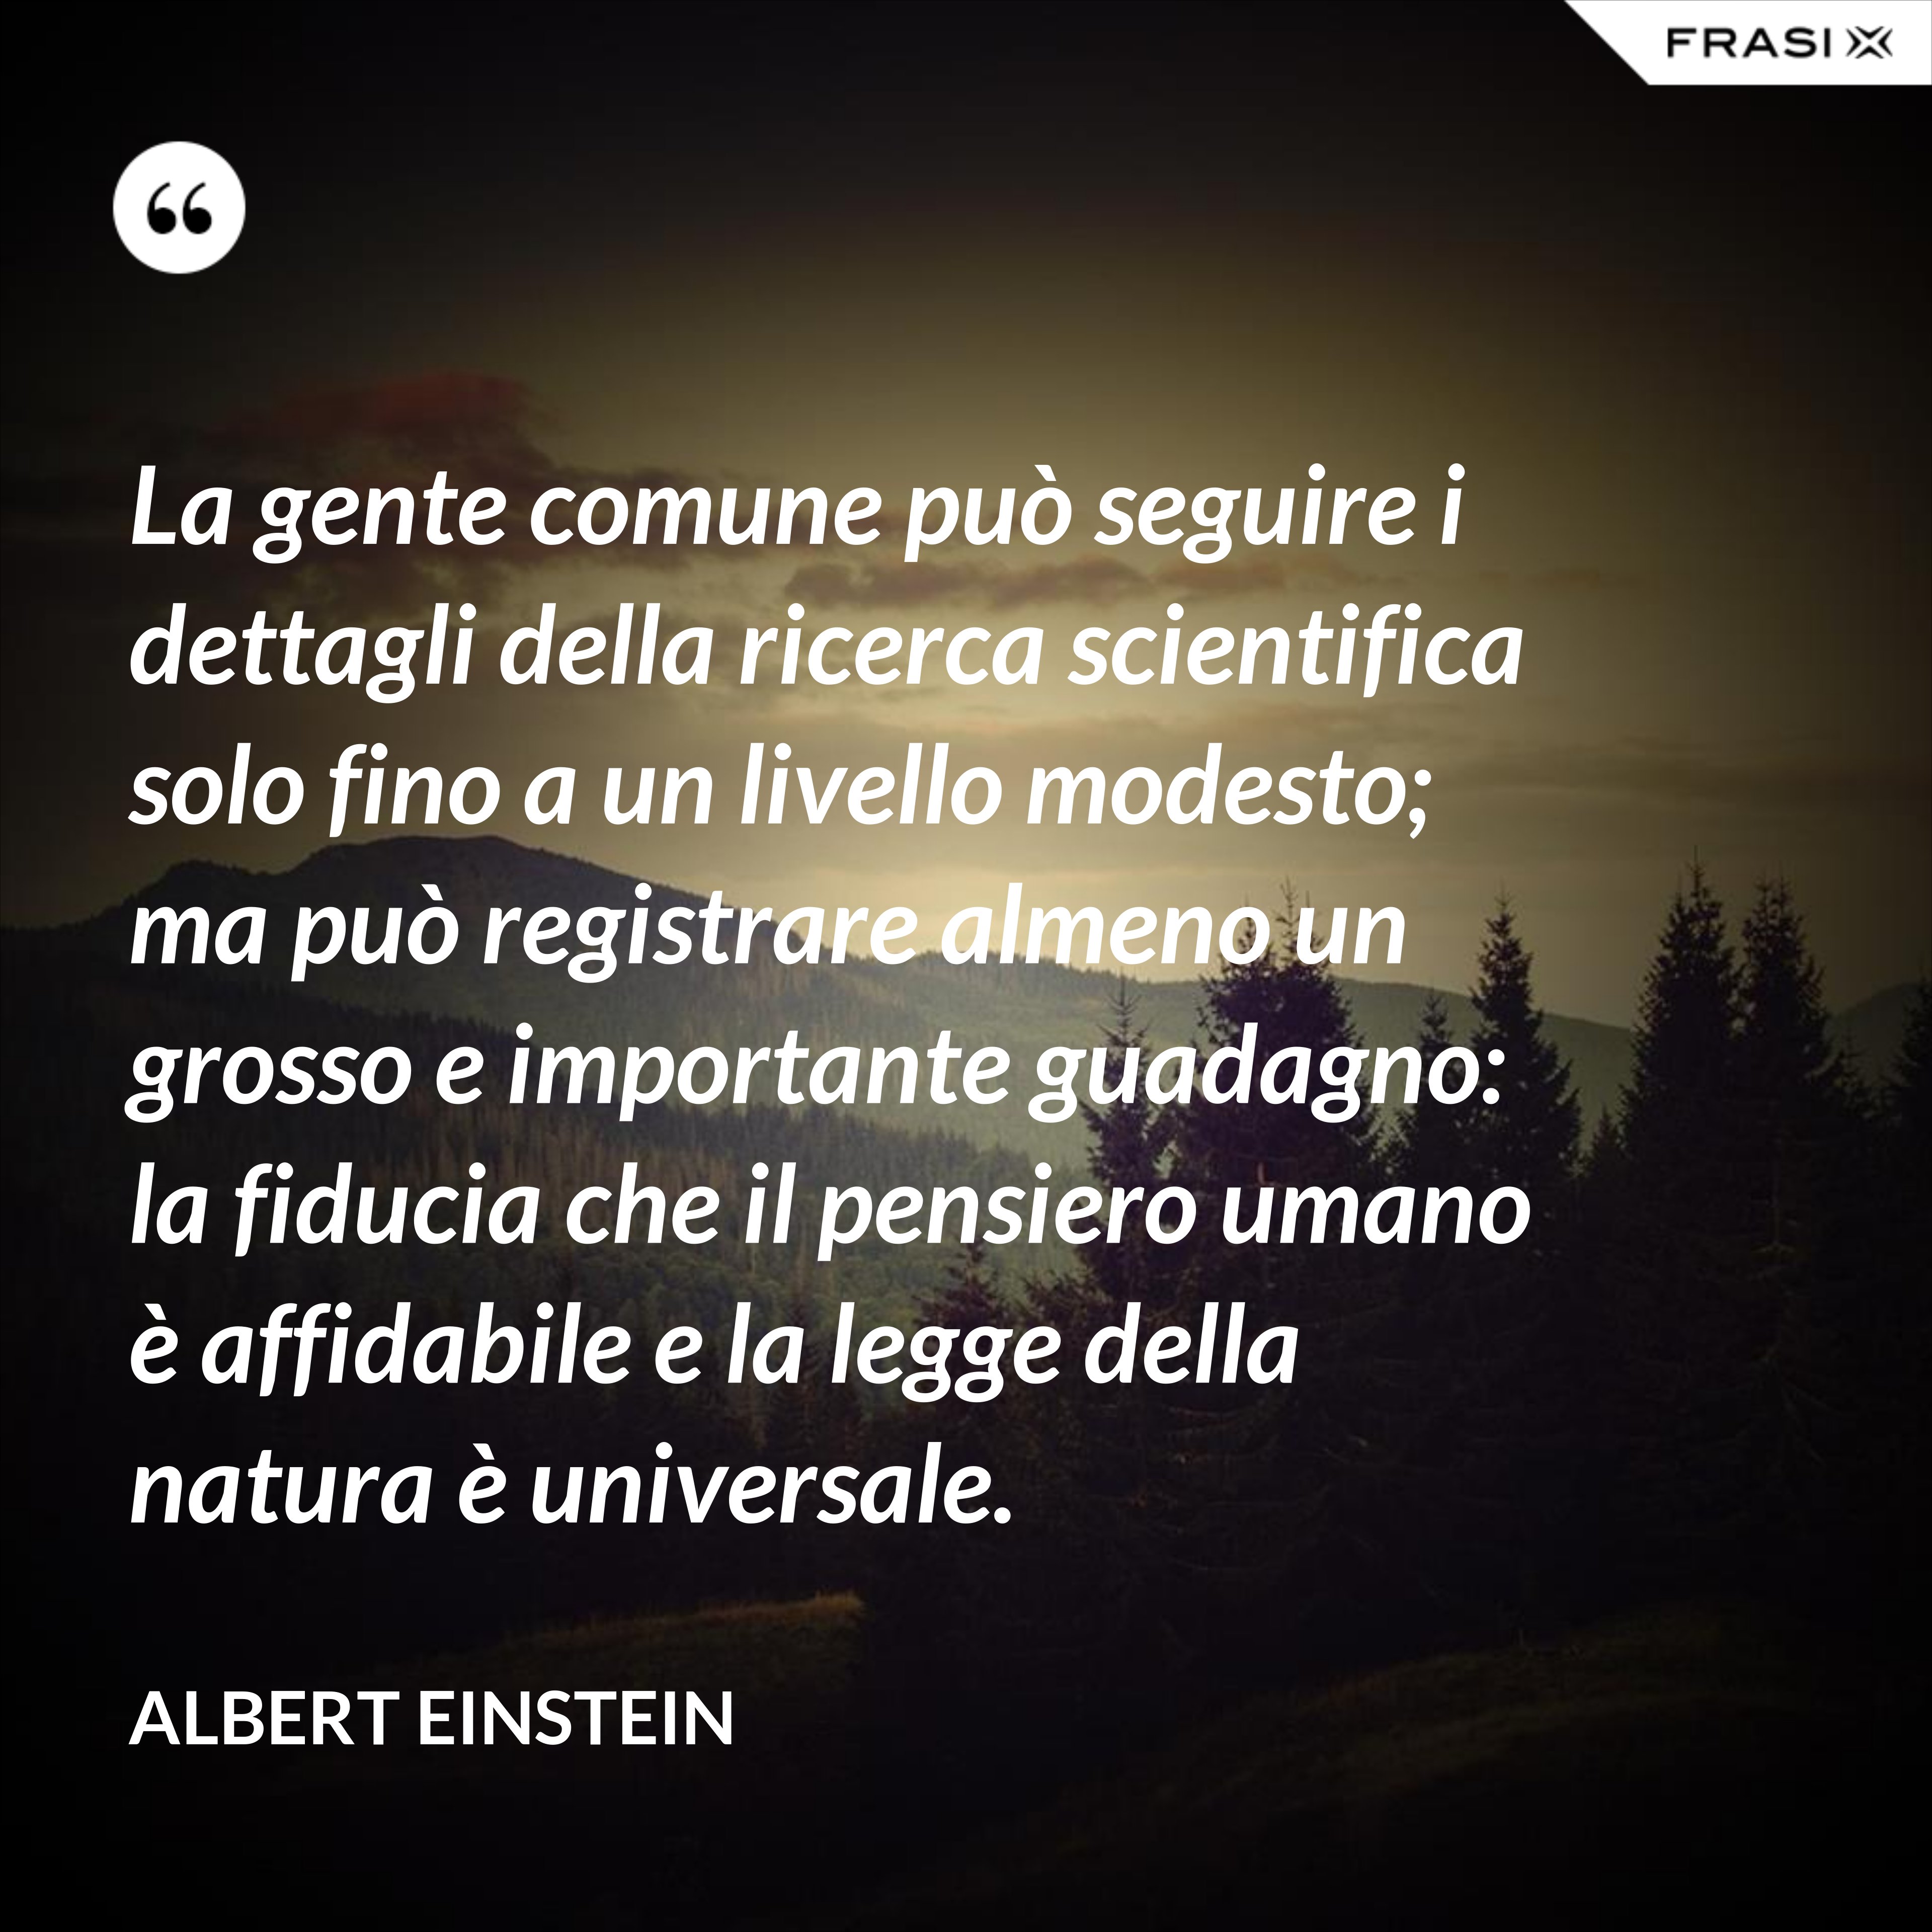 La gente comune può seguire i dettagli della ricerca scientifica solo fino a un livello modesto; ma può registrare almeno un grosso e importante guadagno: la fiducia che il pensiero umano è affidabile e la legge della natura è universale. - Albert Einstein